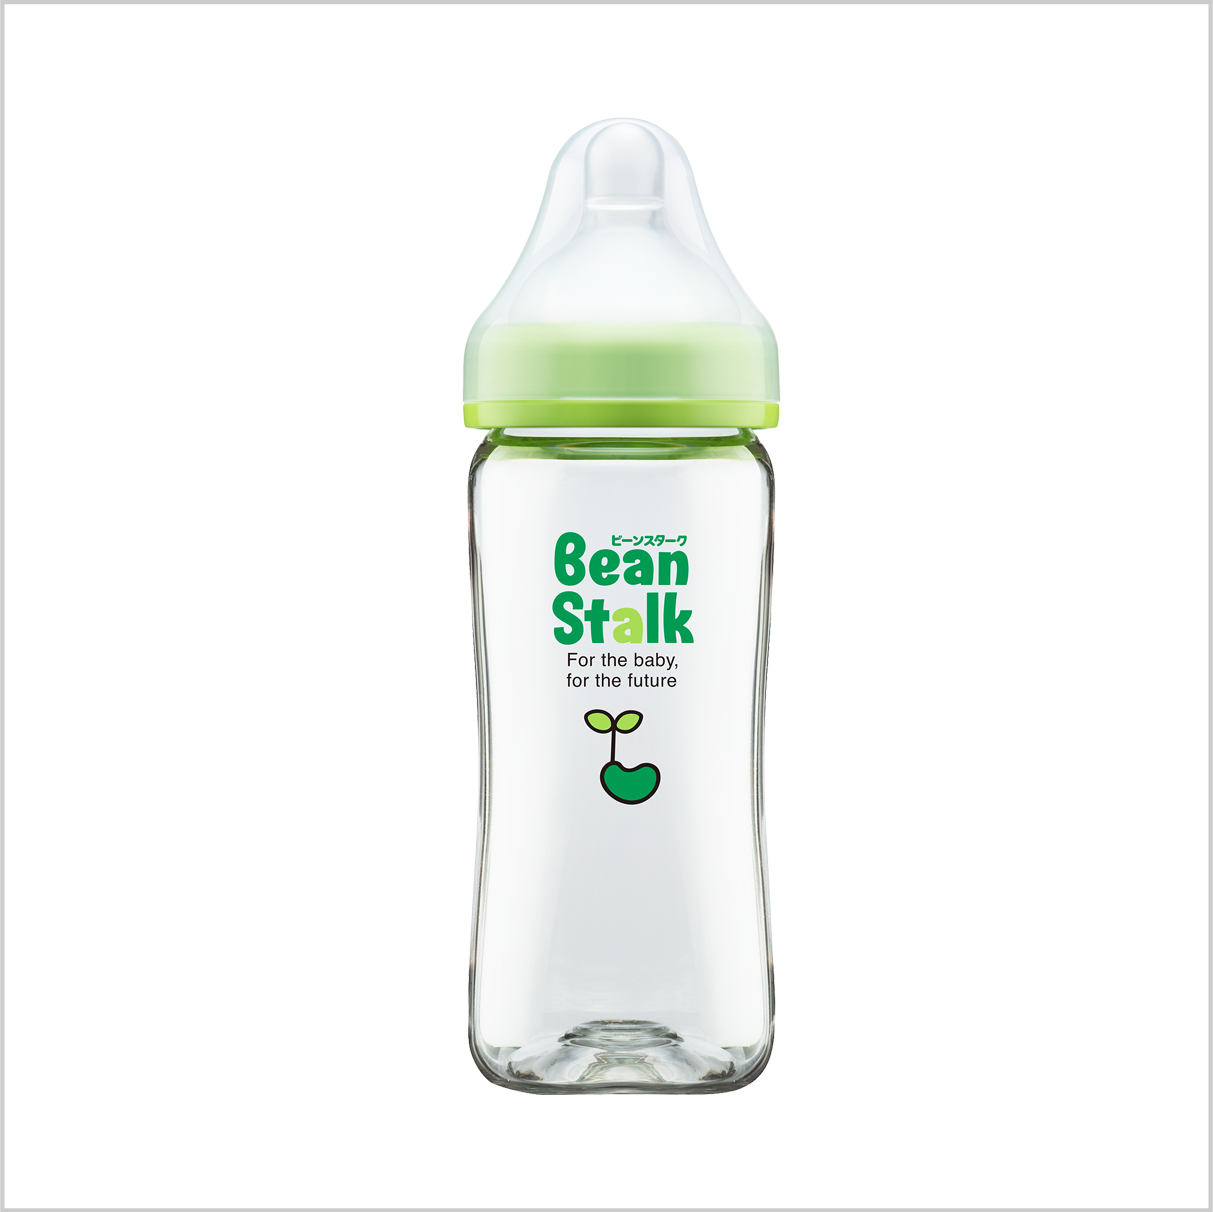 ビーンスターク哺乳びん 赤ちゃん思い 広口トライタンボトル ニプル・哺乳びん| 赤ちゃんのための商品 雪印ビーンスターク ㈱-すこやかな笑顔のために